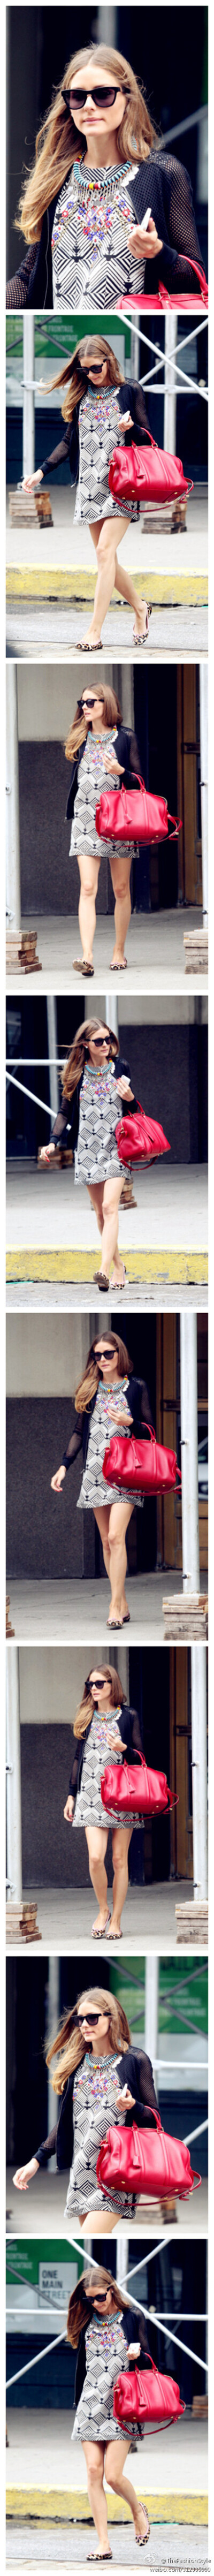 #名媛街拍#—— #Olivia Palermo# Goes Shopping in NYC 。 2013.07.23 HQ（#高清组图#）